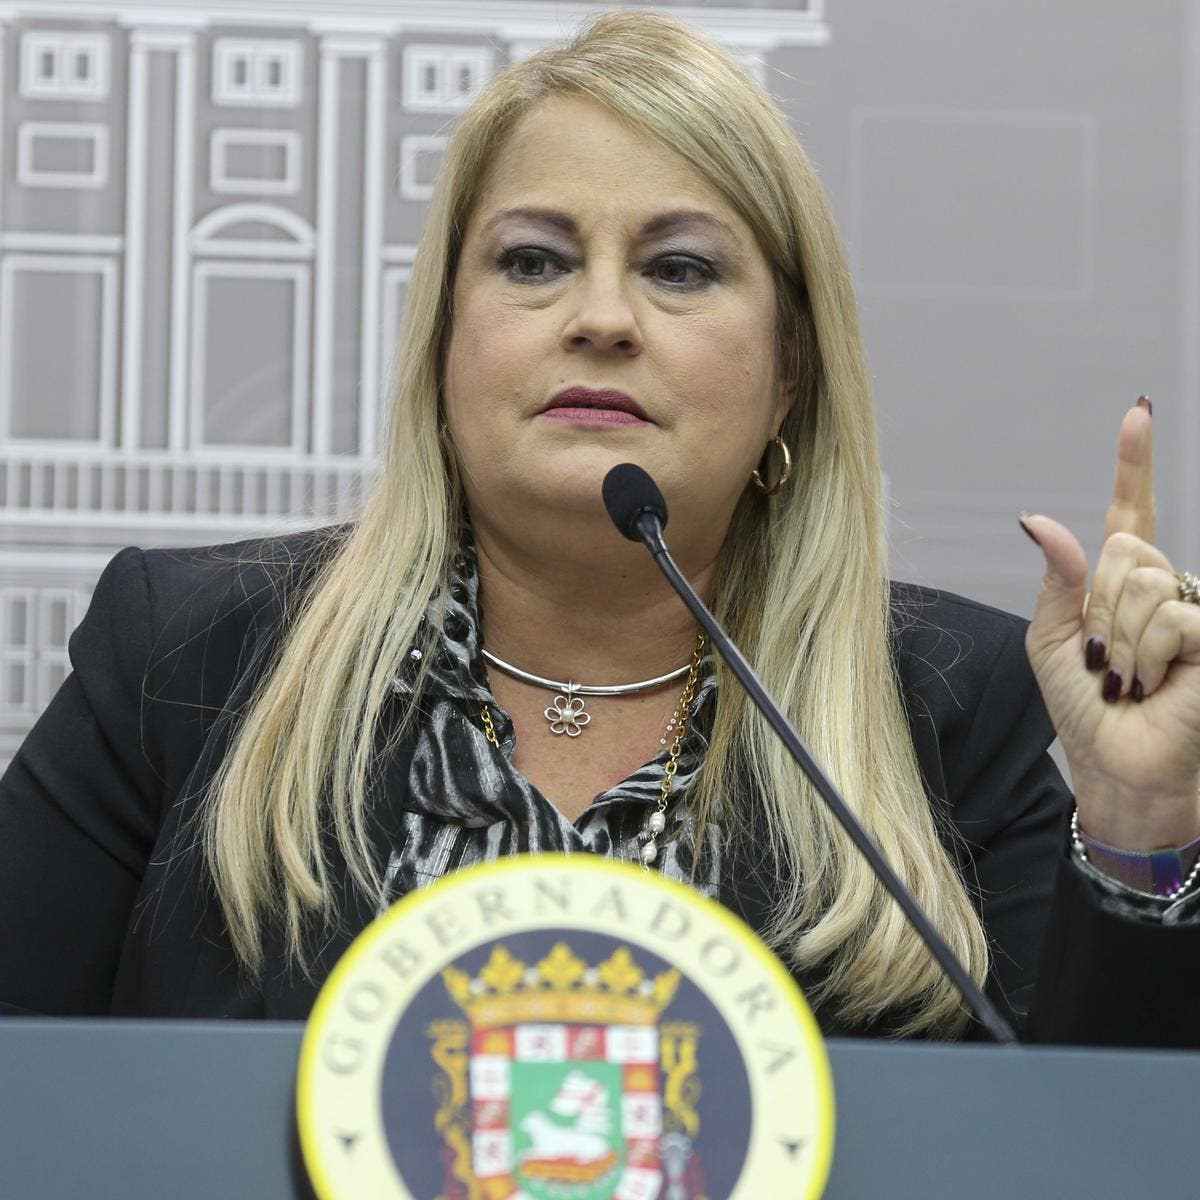 La exgobernadora de Puerto Rico Wanda Vázquez es arrestada por corrupción